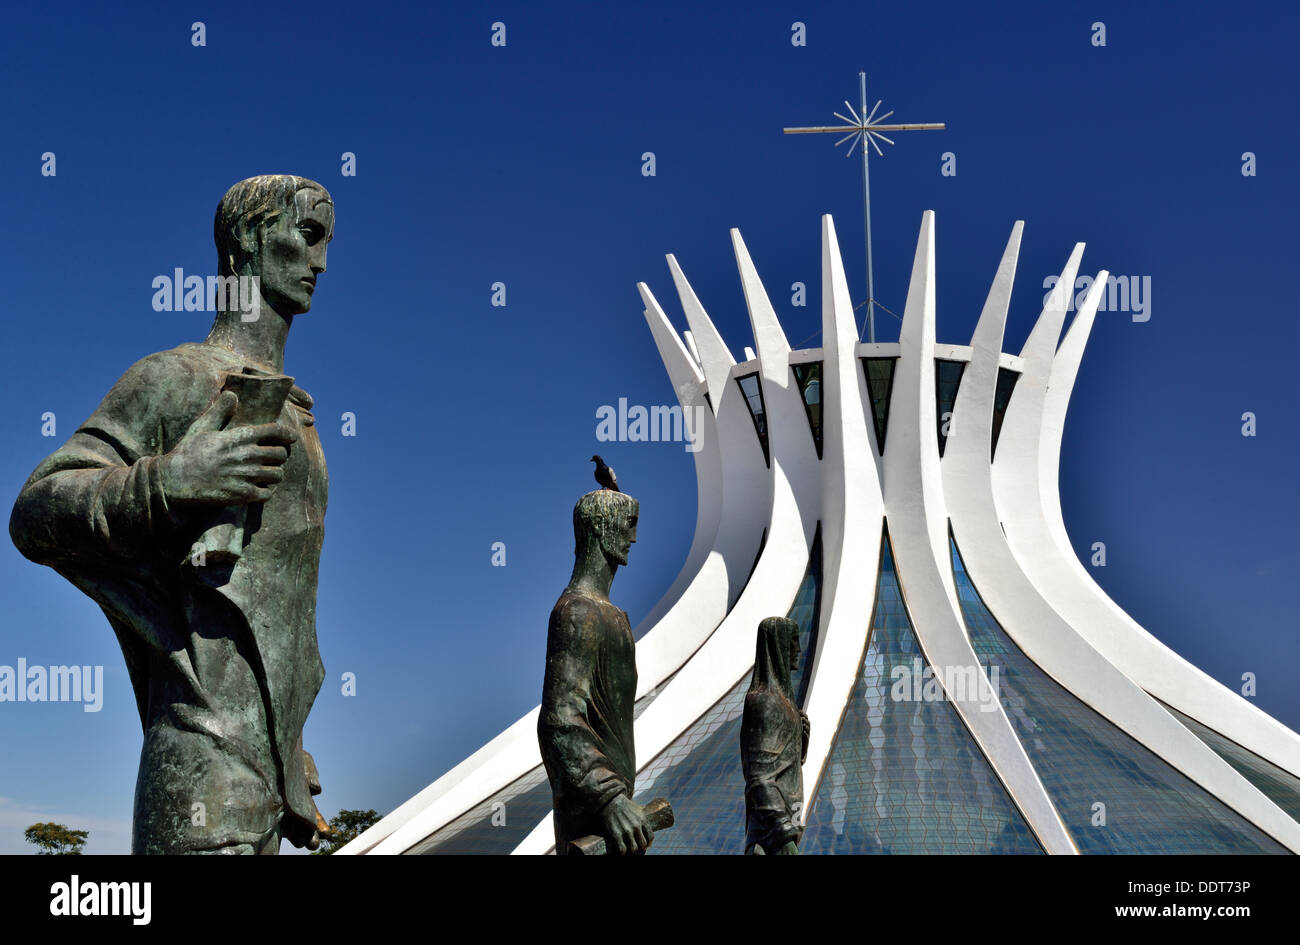 Brasilien, Brasilia: Metropolitan Kathedrale Nossa Senhora da Aparecida mit Evangelisten von Oscar Niemeyer Stockfoto